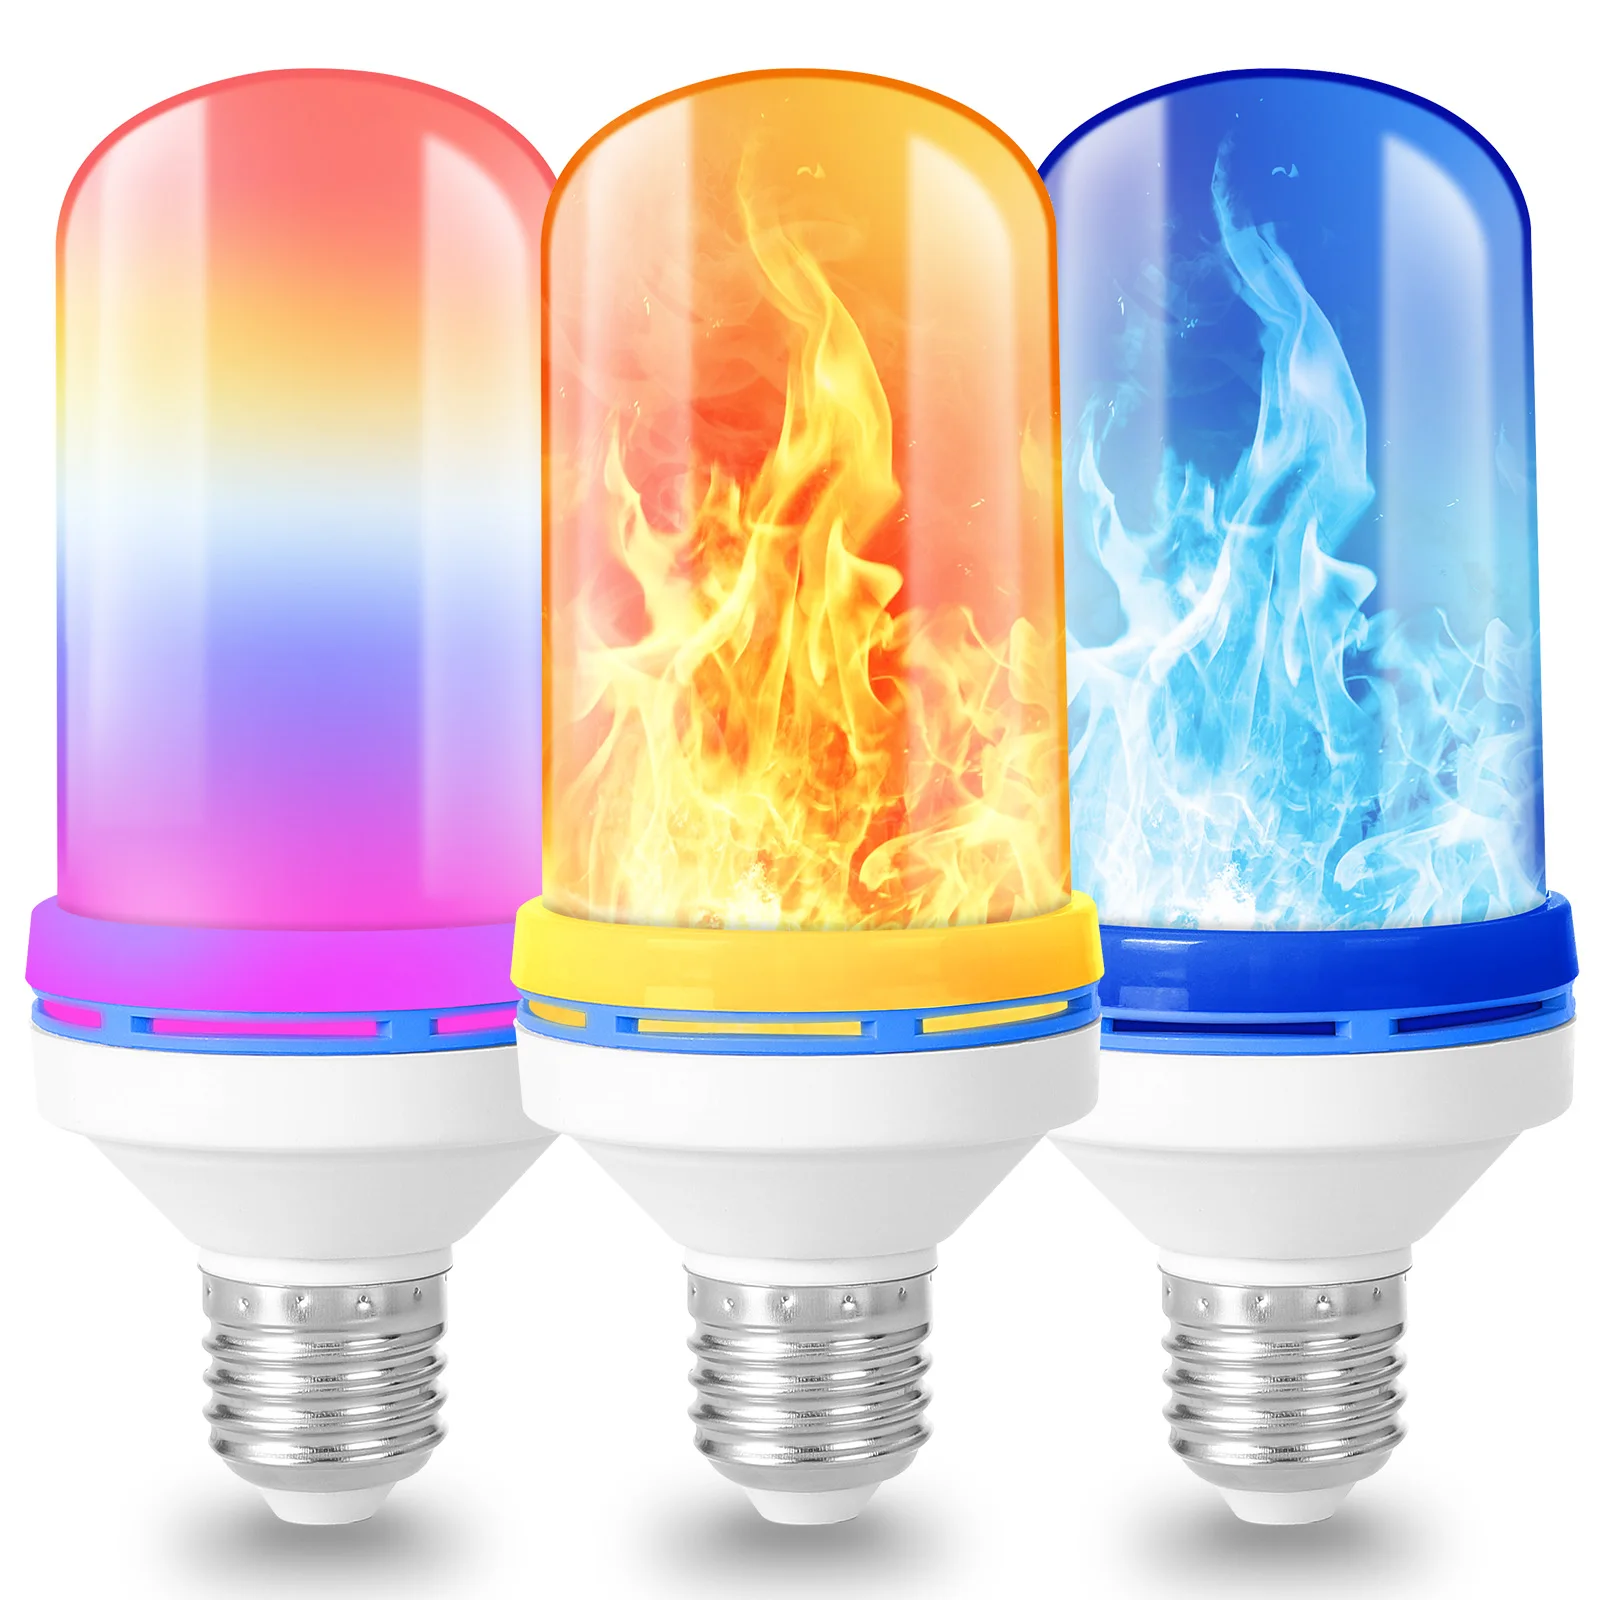 

E27 Fire Flame LED Light Bulbs 4 Modes Flicker Burning Effect Lamp AC85V-265V 5W Dynamic Flame Corn Lights Home Lighting Decor